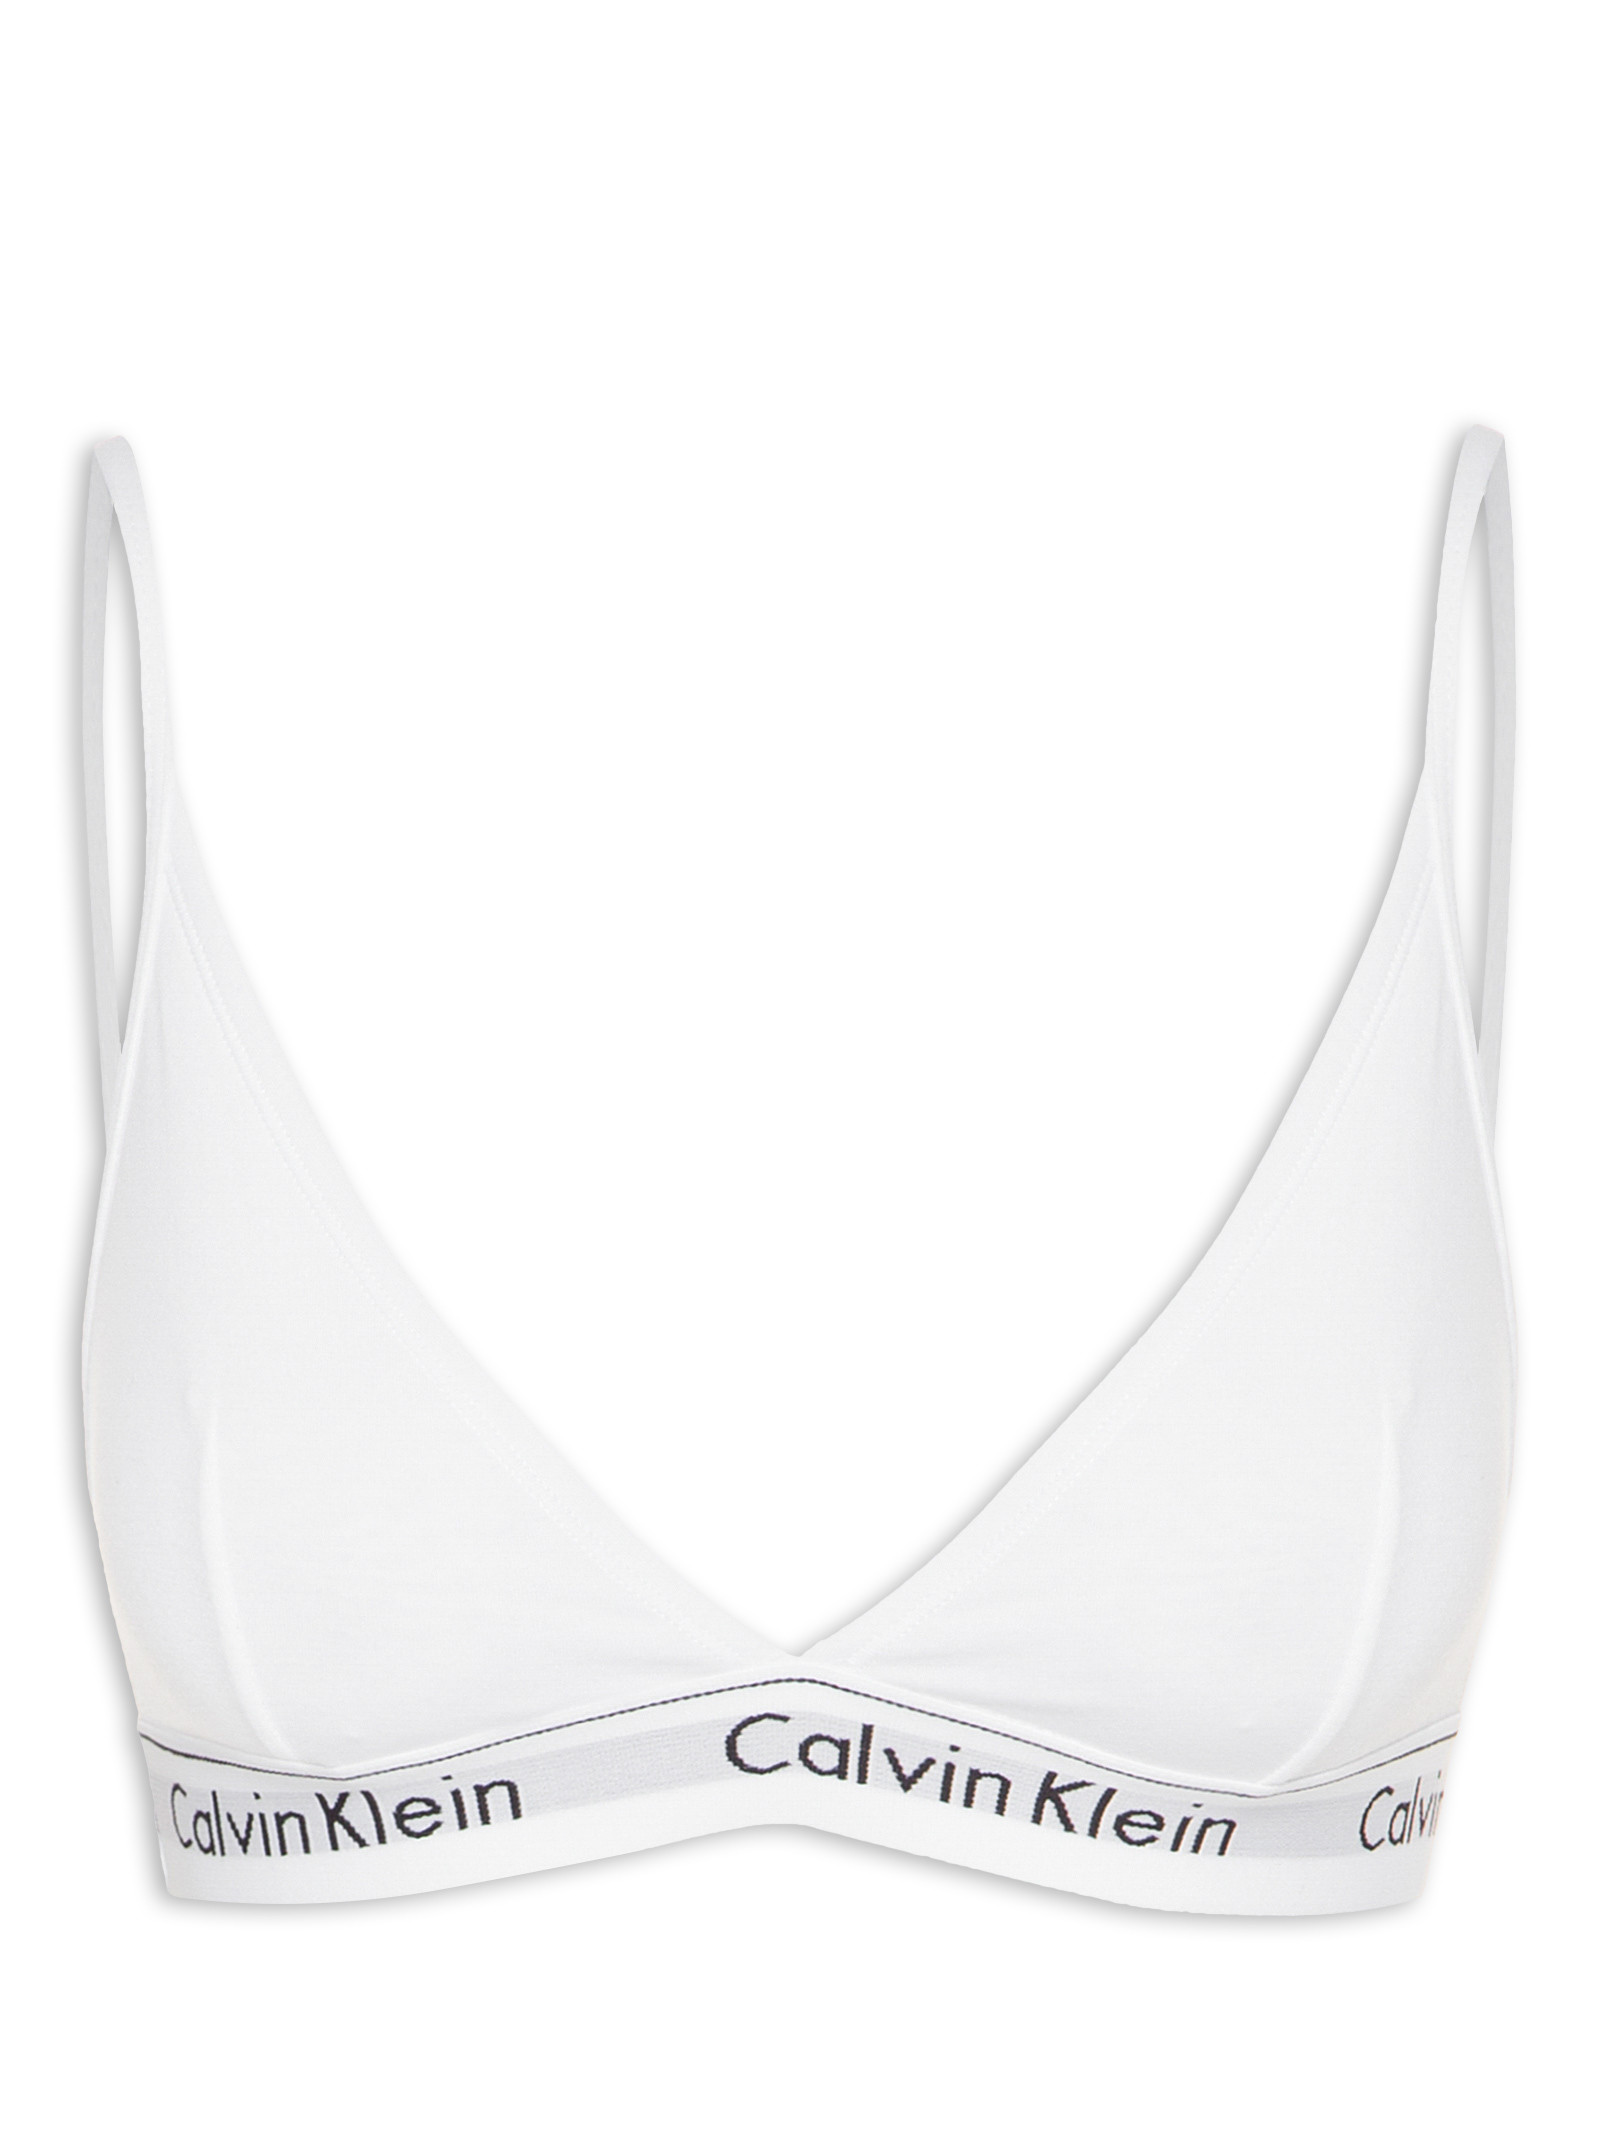 Top Calvin Klein Triangulo Modern - Loja Pirâmide Center